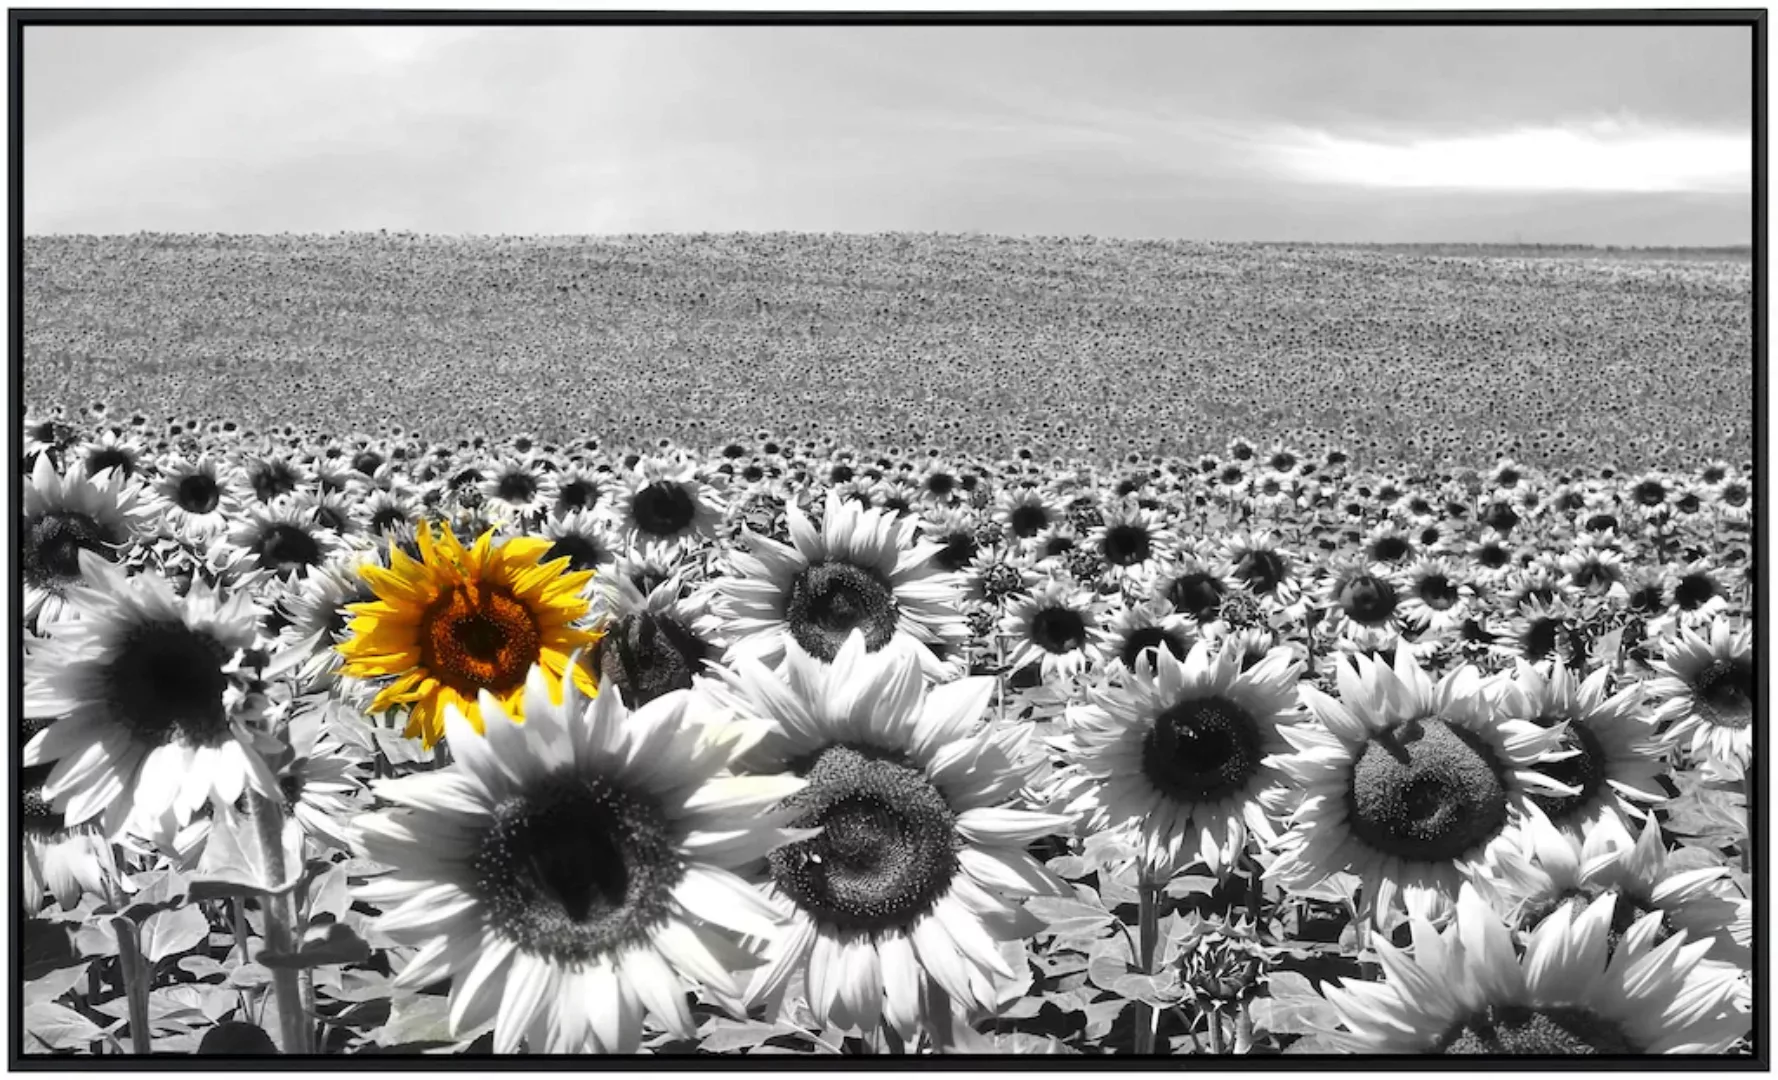 Papermoon Infrarotheizung »Sonnenblumenfeld«, sehr angenehme Strahlungswärm günstig online kaufen